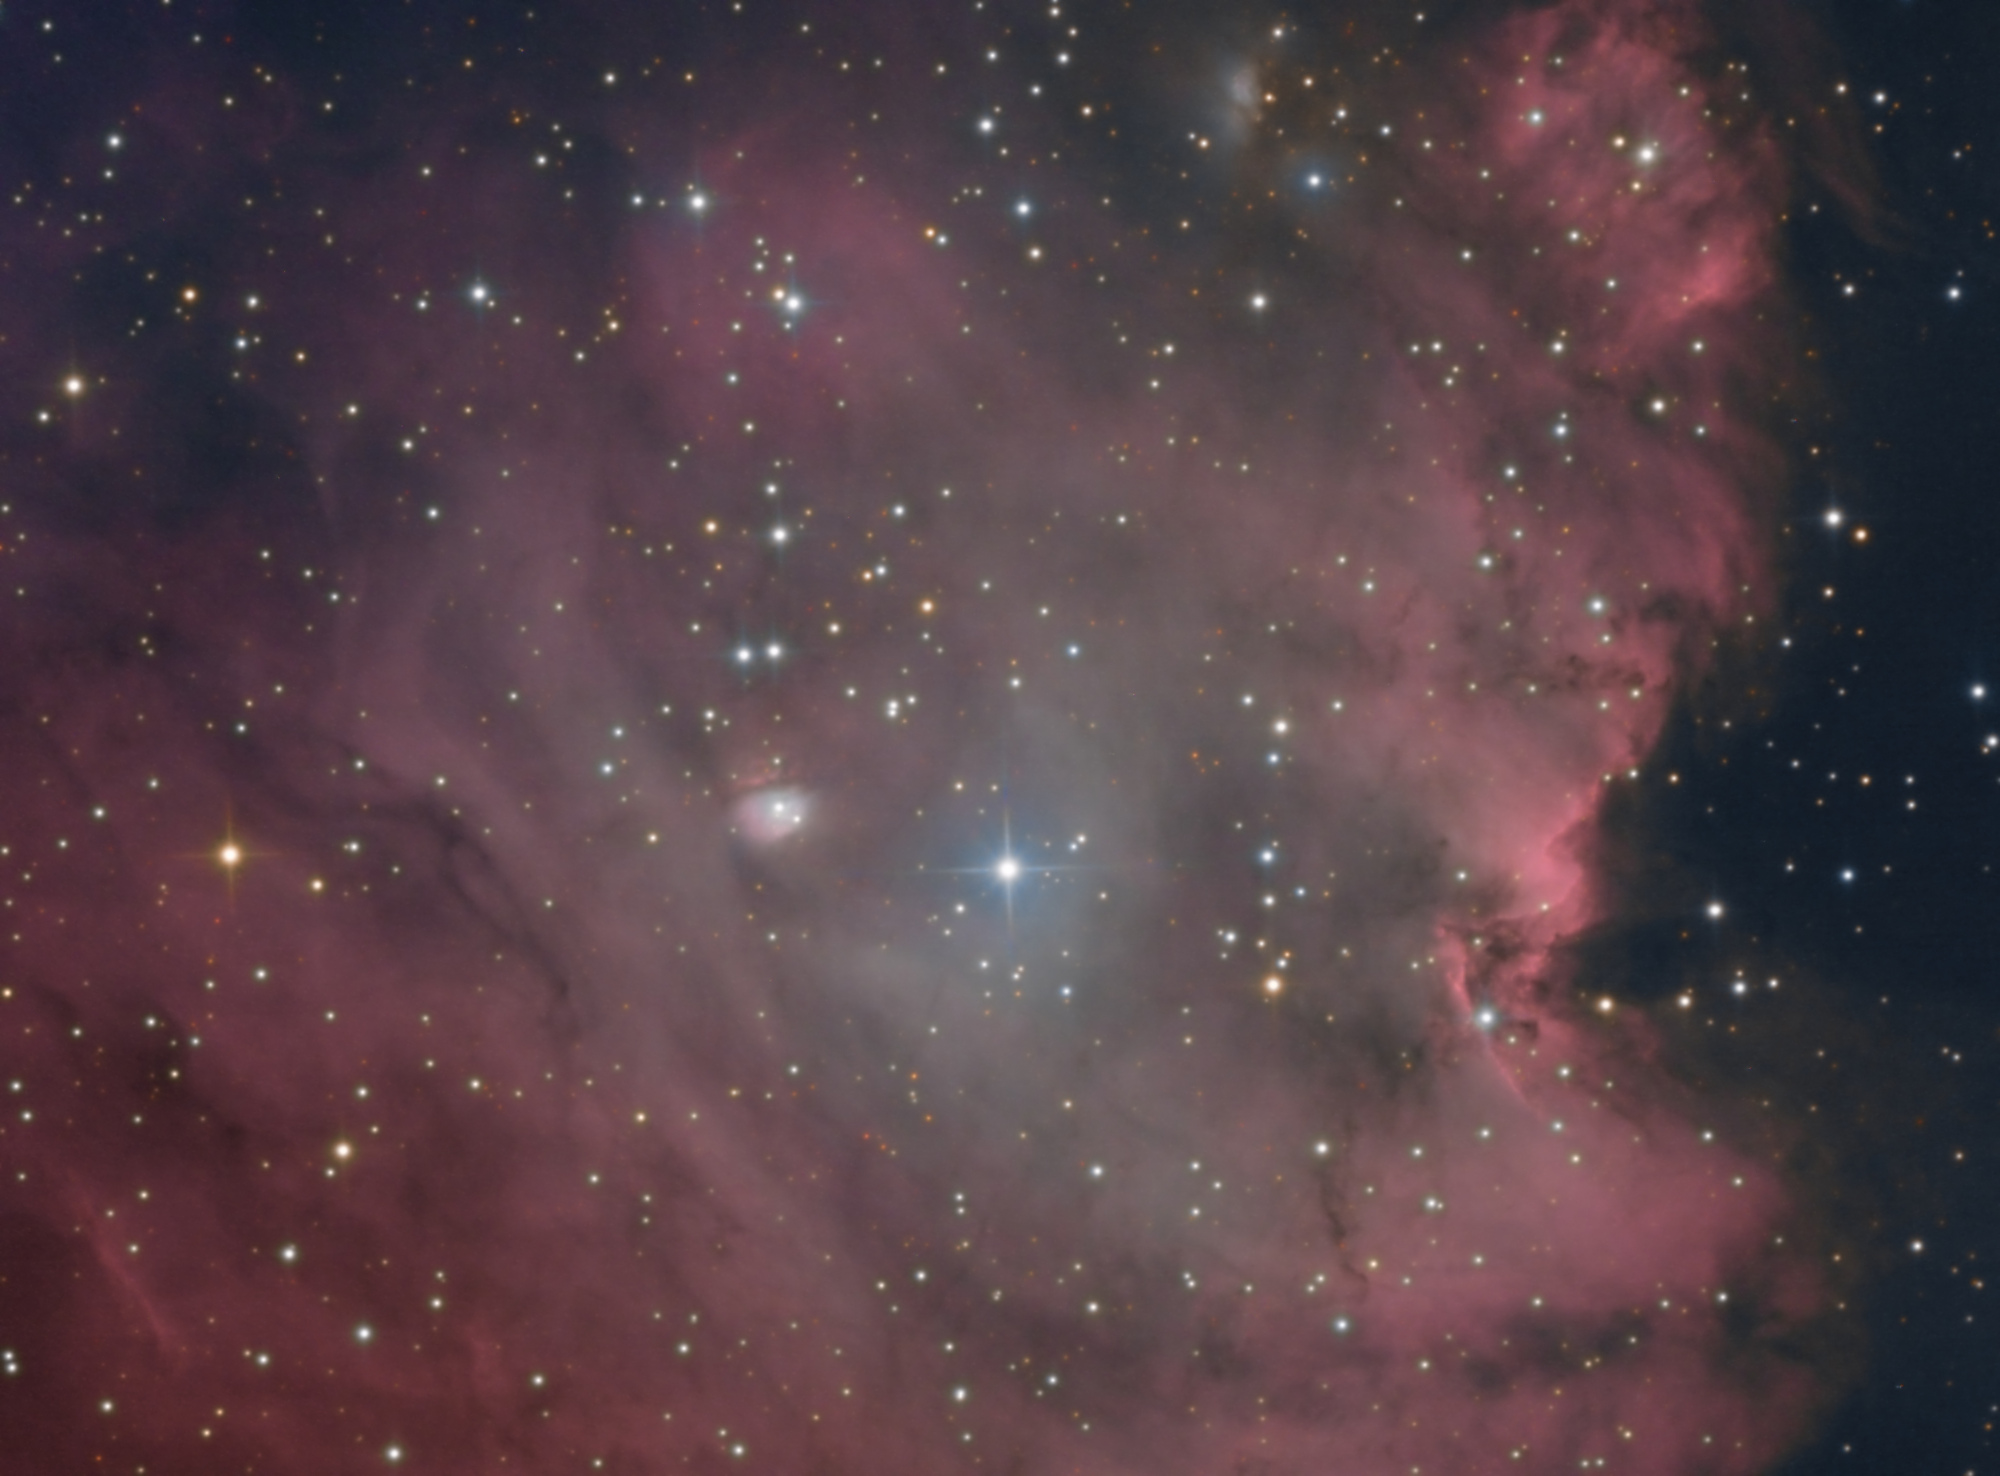 NGC_2174_HaRVB-2.thumb.jpg.a5feee98fcfe6e378cda8bffed8a5b90.jpg